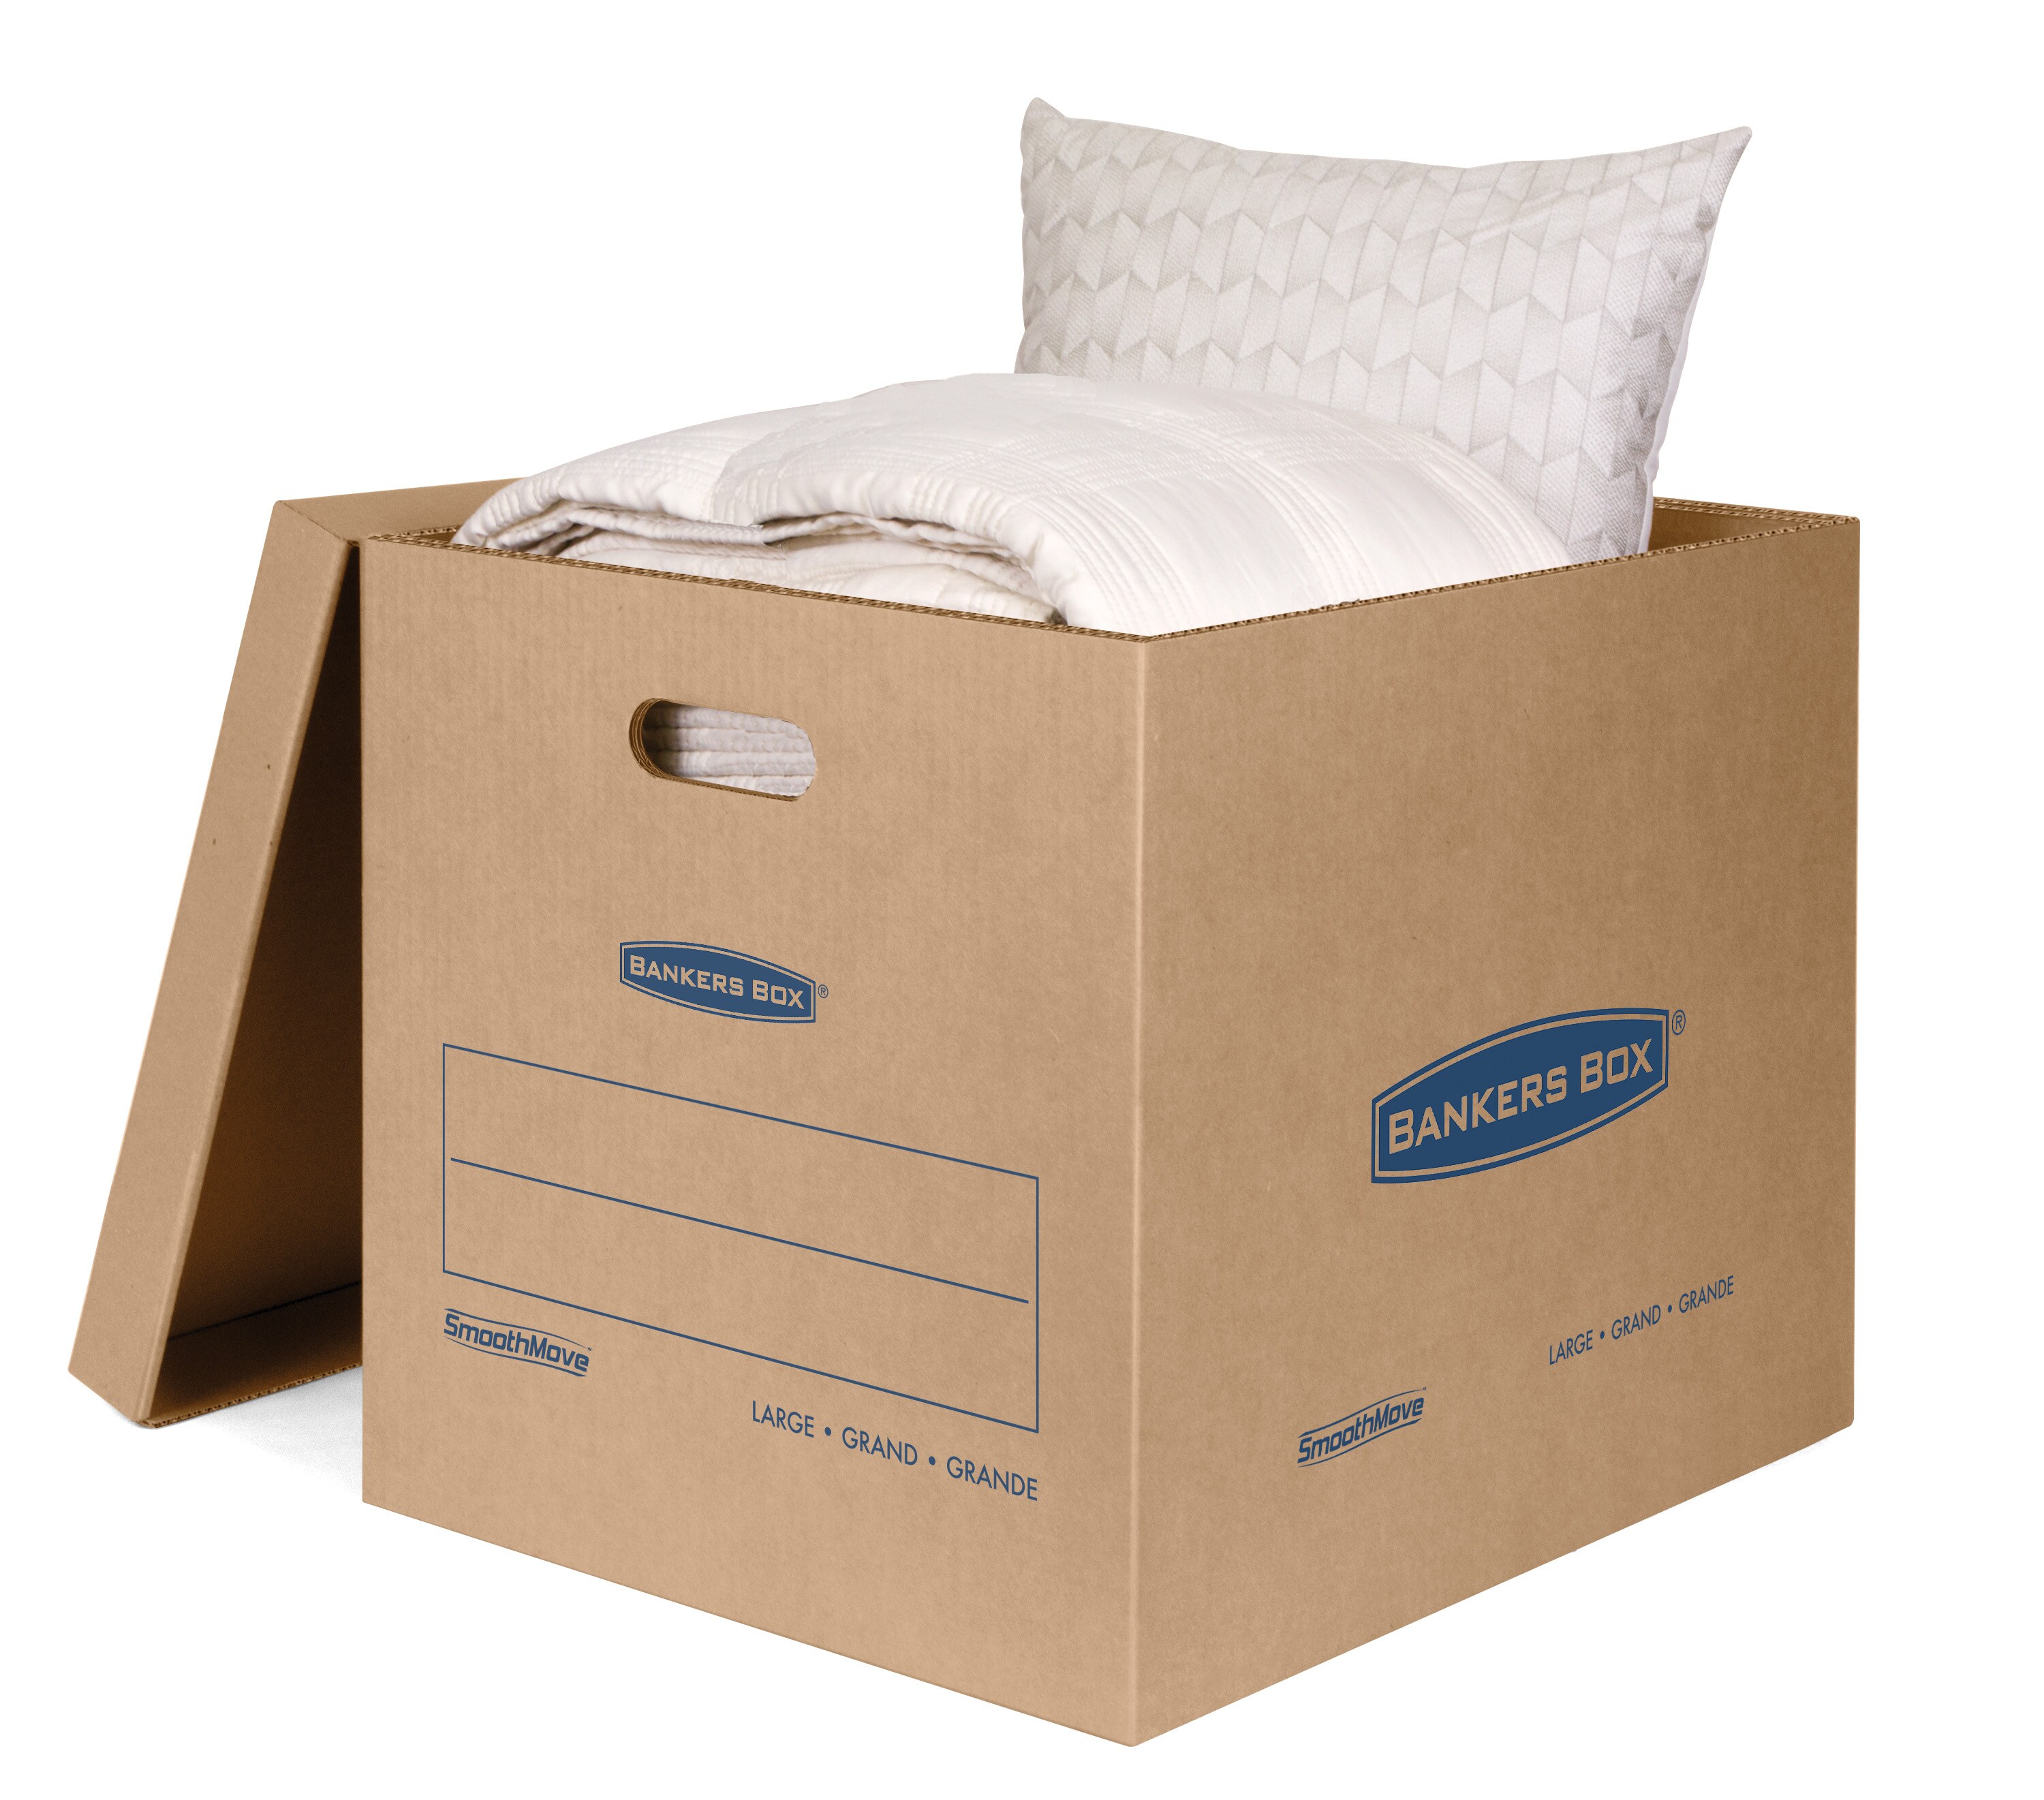 75 Moving Boxes Rental - Box Save Boston